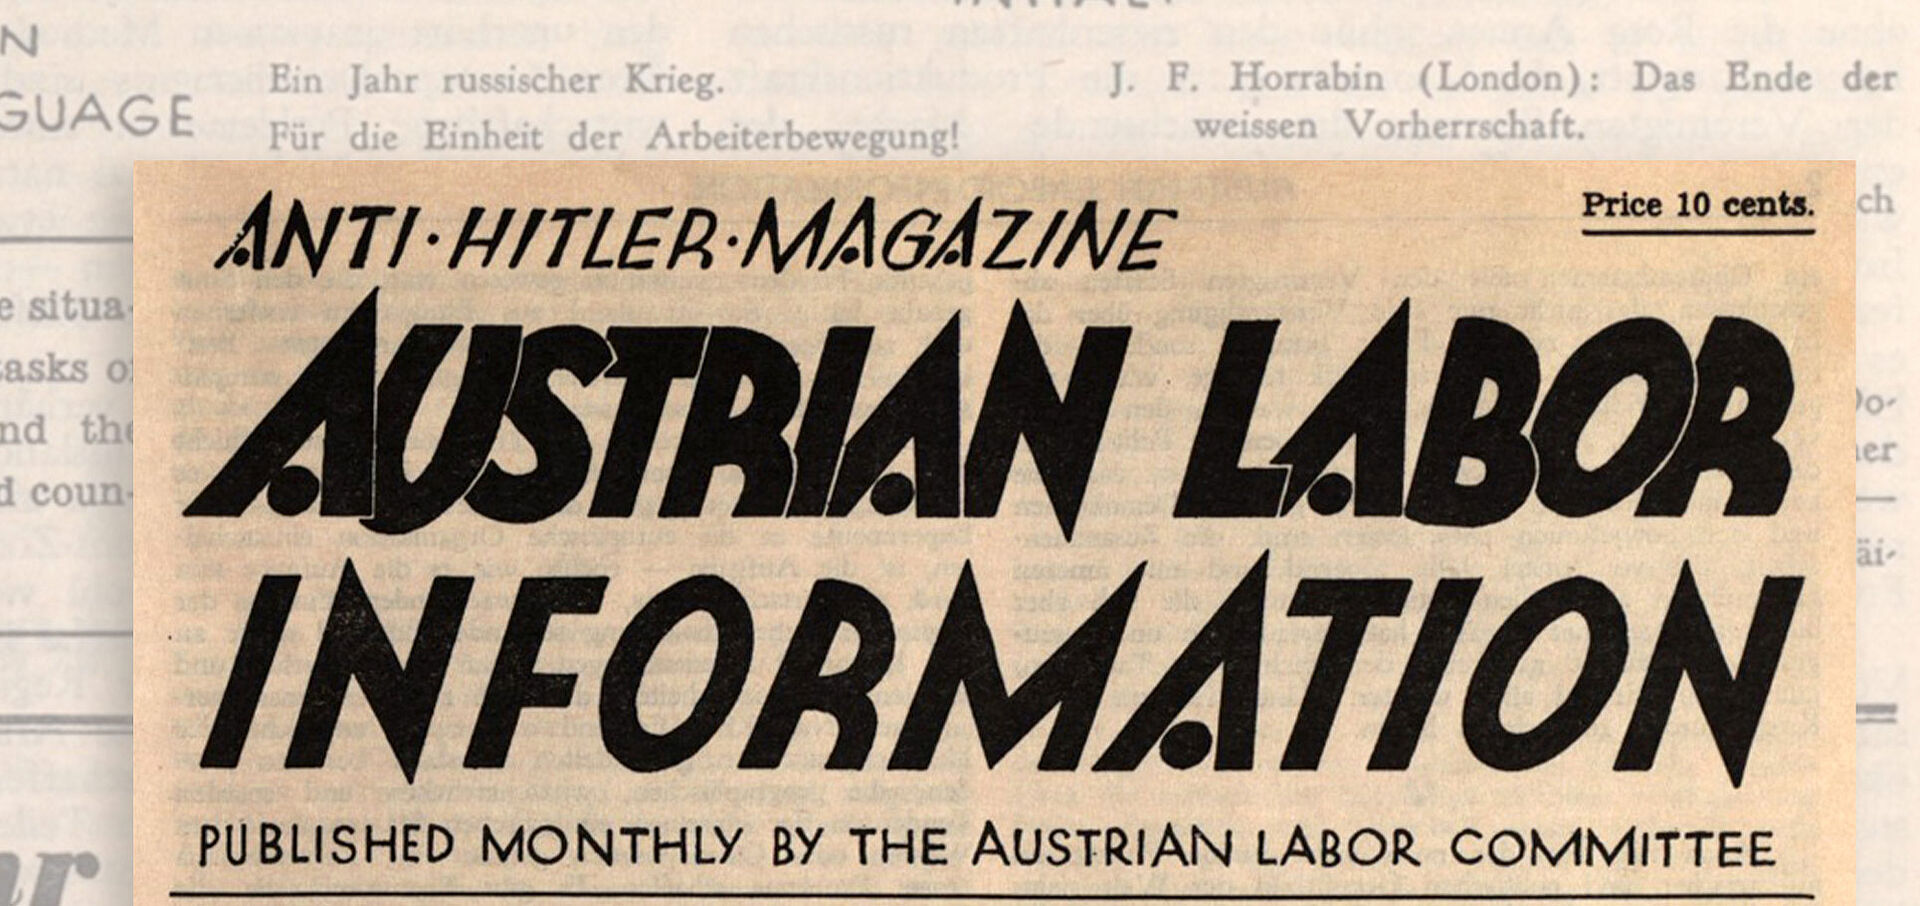 Zeitungsausschnitt mit der Aufschrift "Austrian Labor Information"